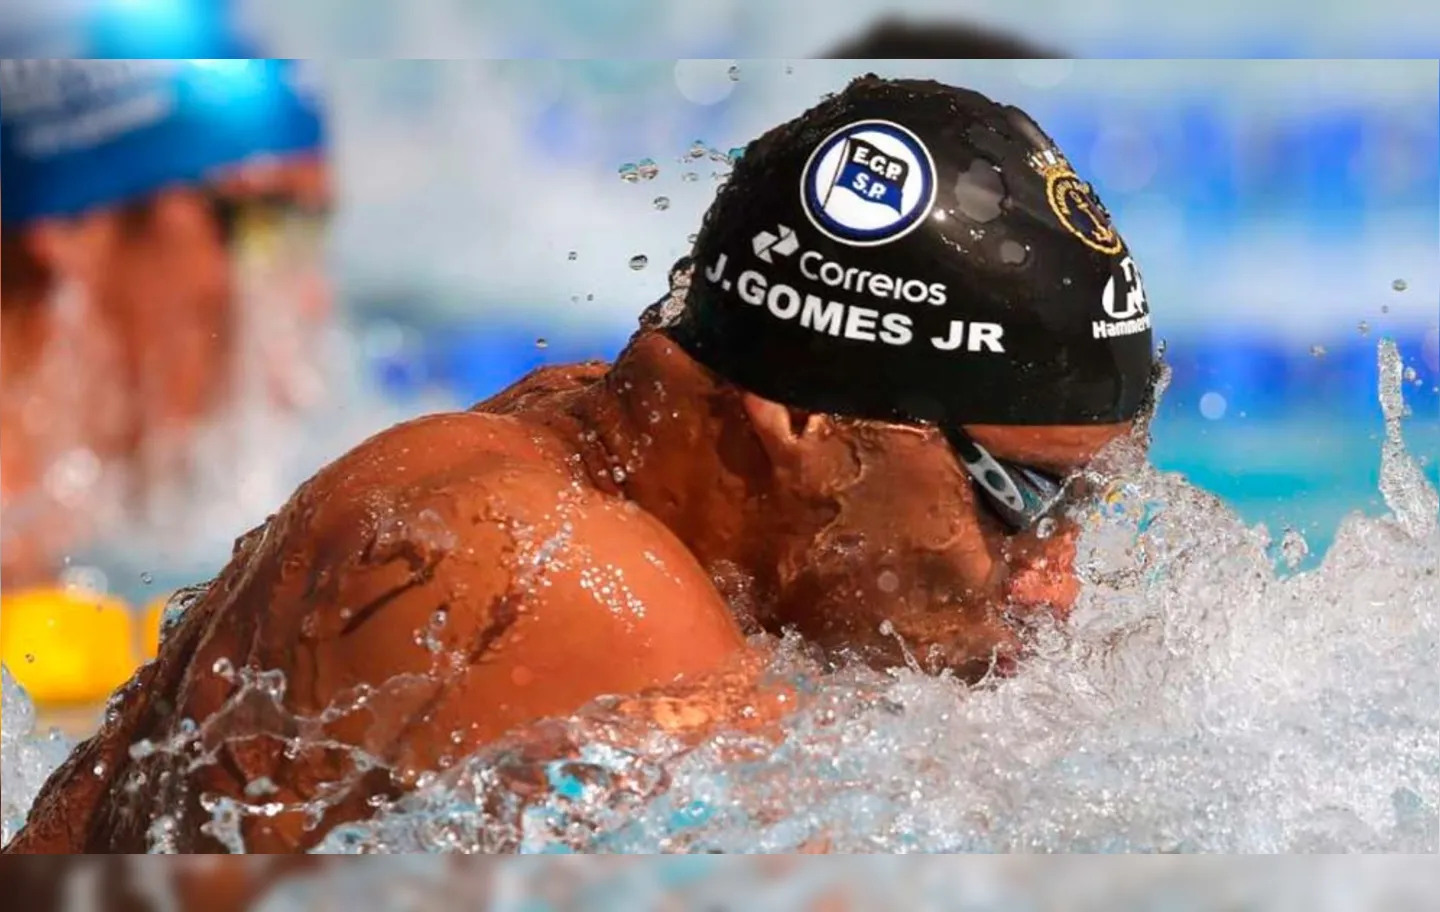 João Gomes Junior assegurou a medalha de bronze na disputa dos 100 metros peito